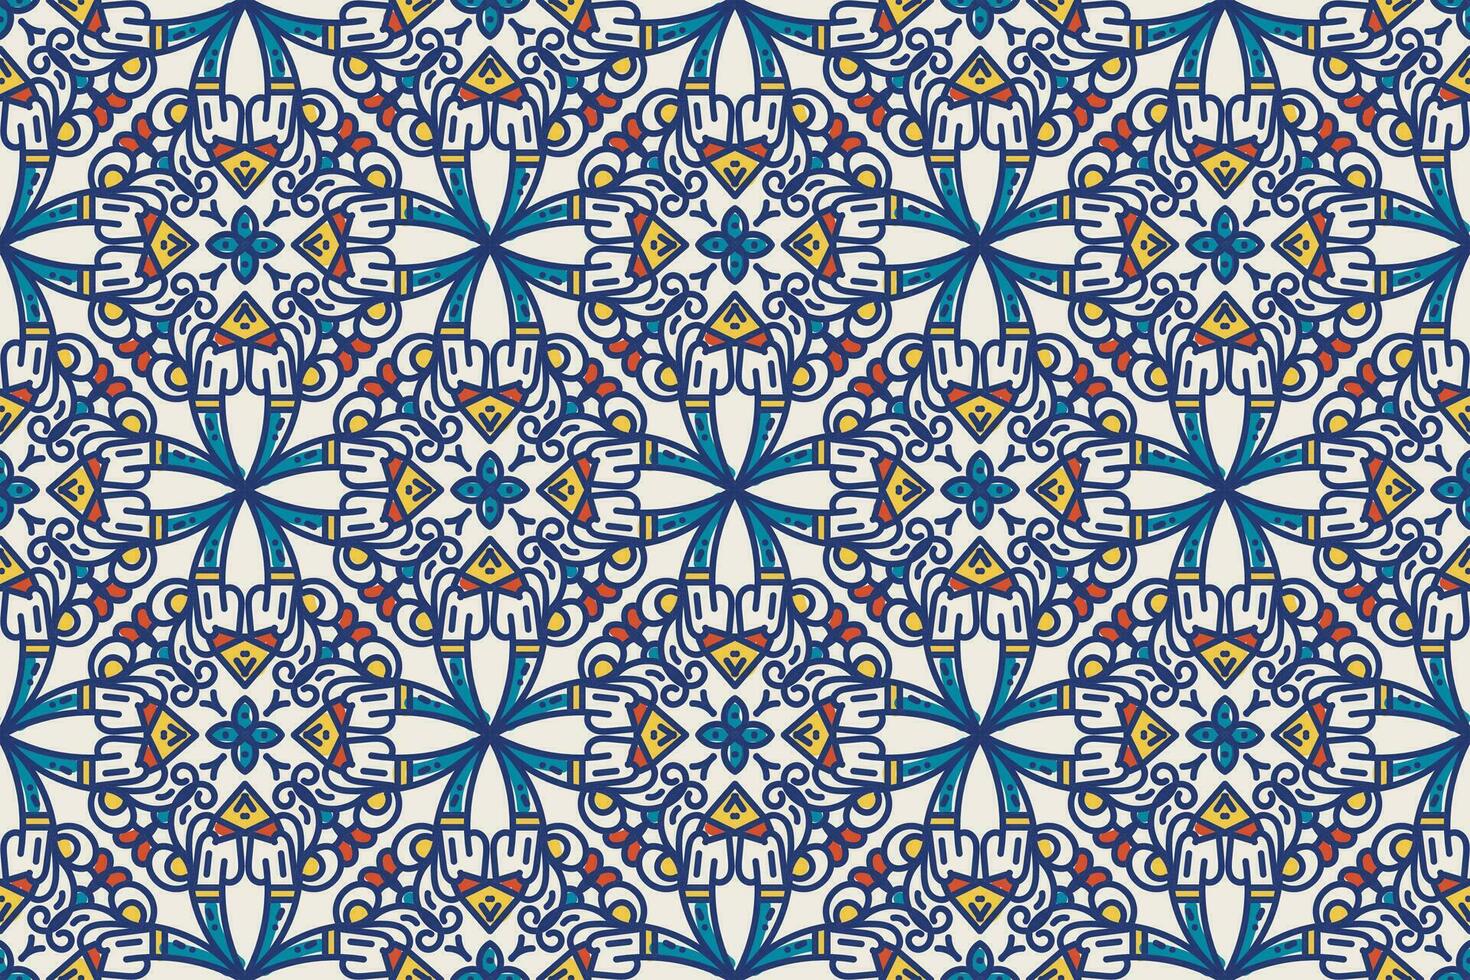 turkiska moské fönster vektor sömlös mönster. ramadan mubarak muslim bakgrund. traditionell ramadan kareem moské mönster med guld rutnät mosaik. islamic fönster rutnät design av lykta former kakel.